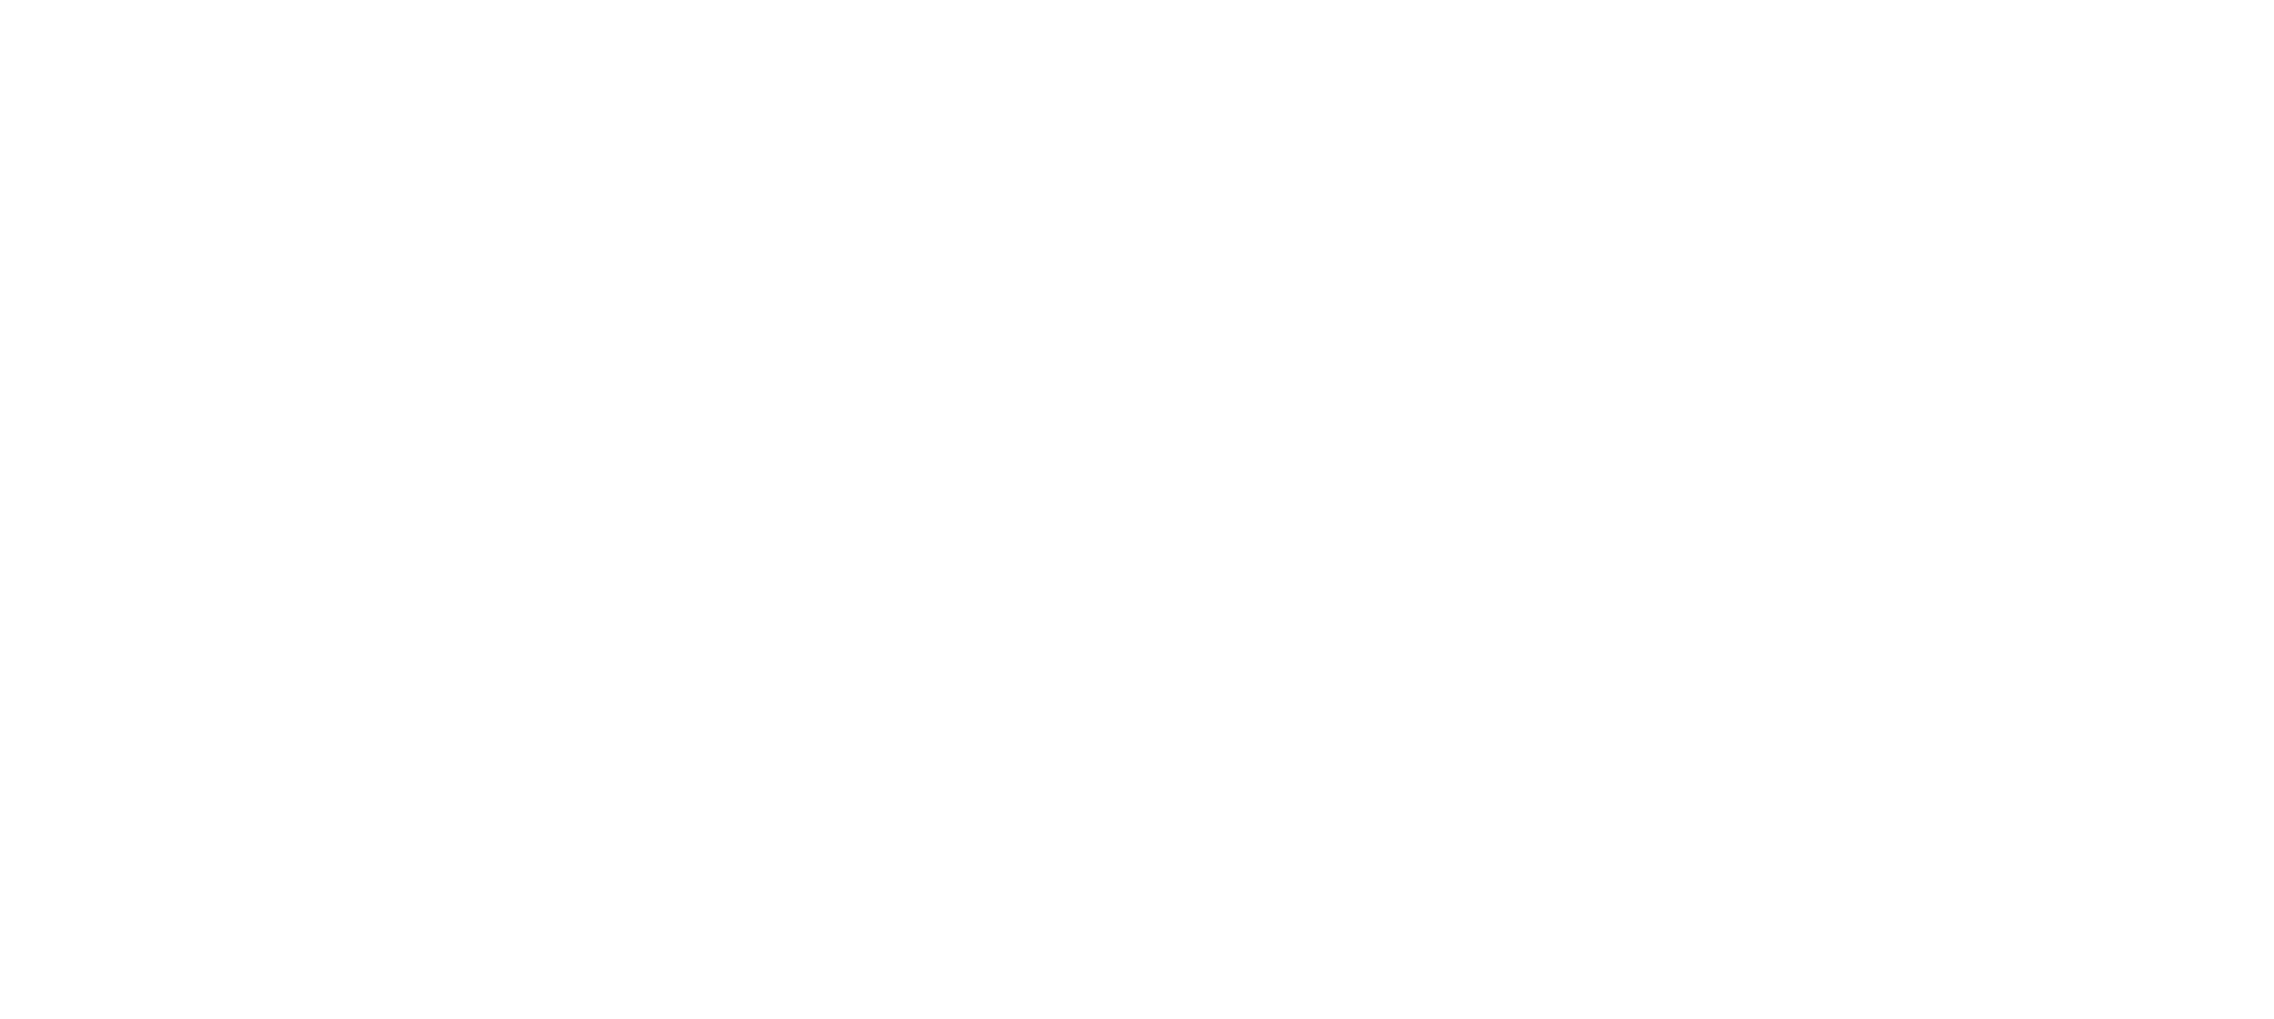 Student Design Challenge Illustration Car